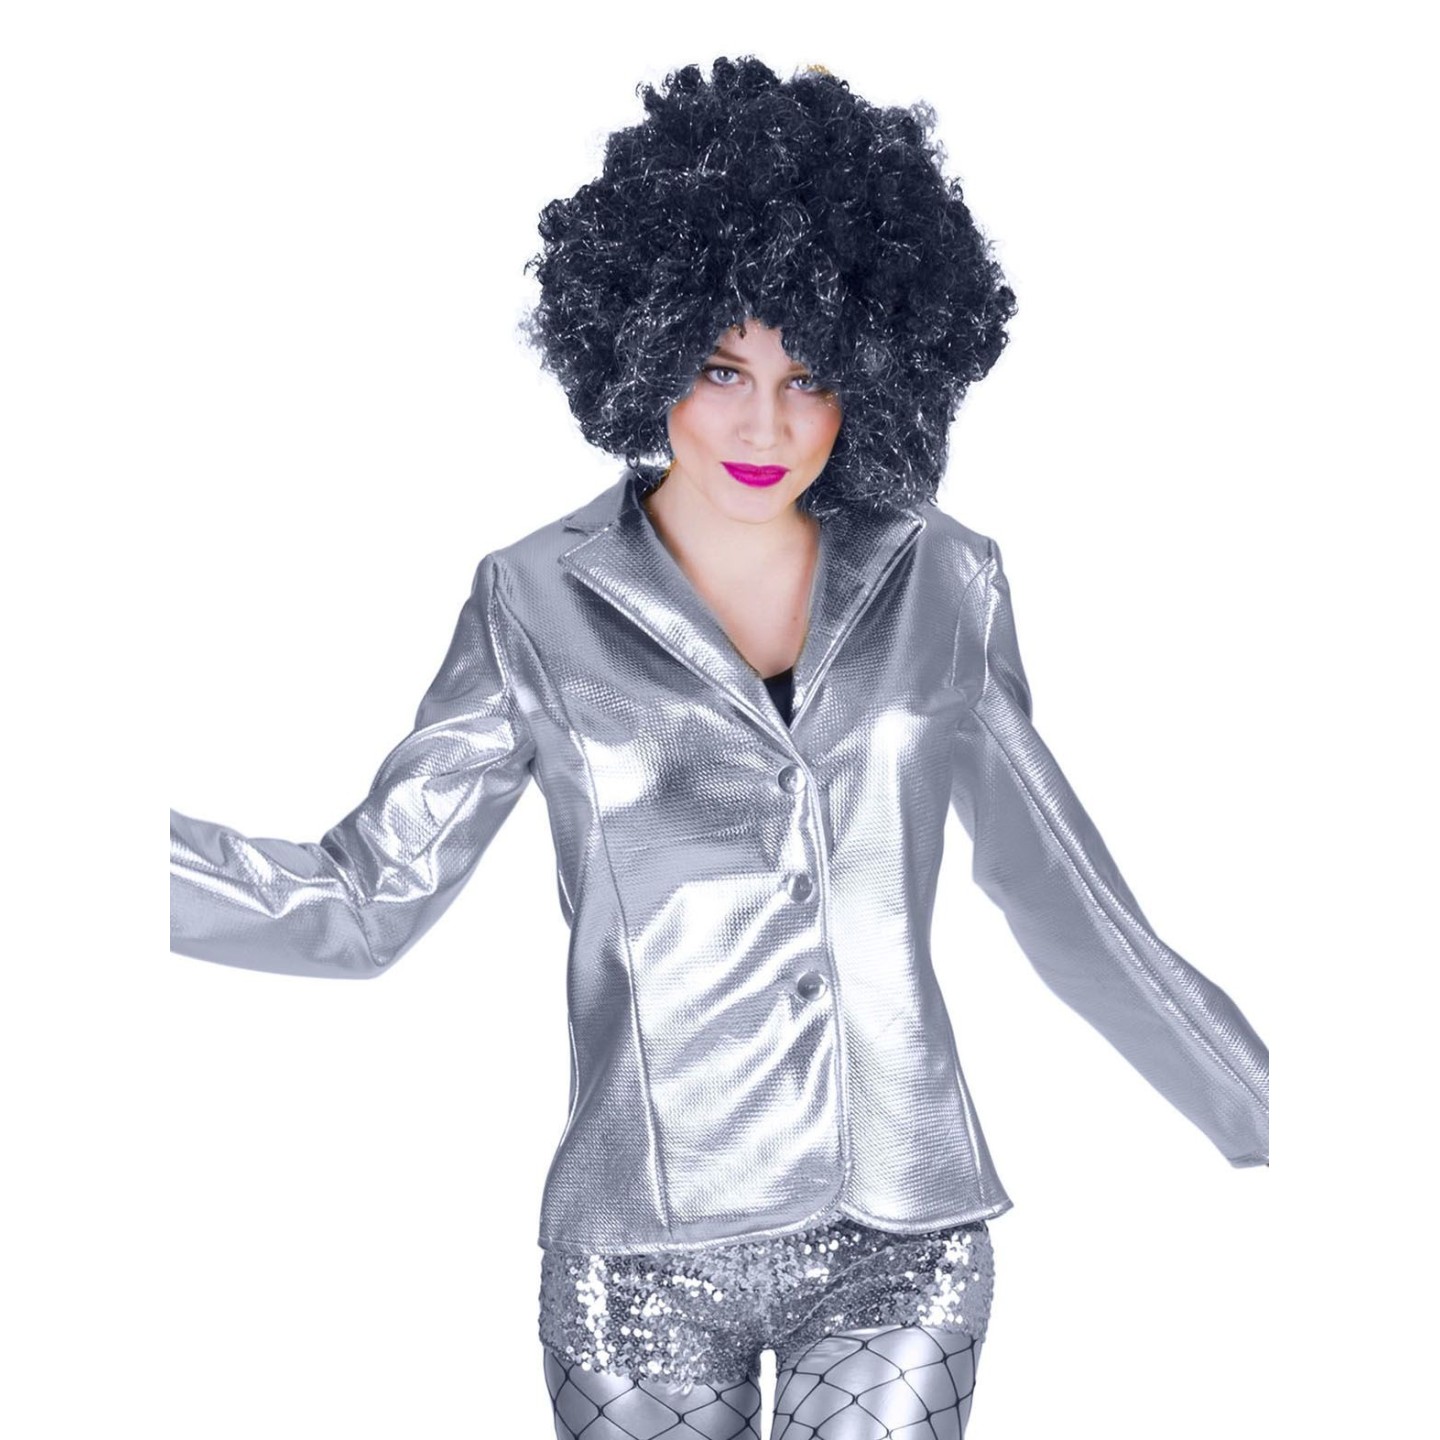 disco kleding dames zilver glitter jasje